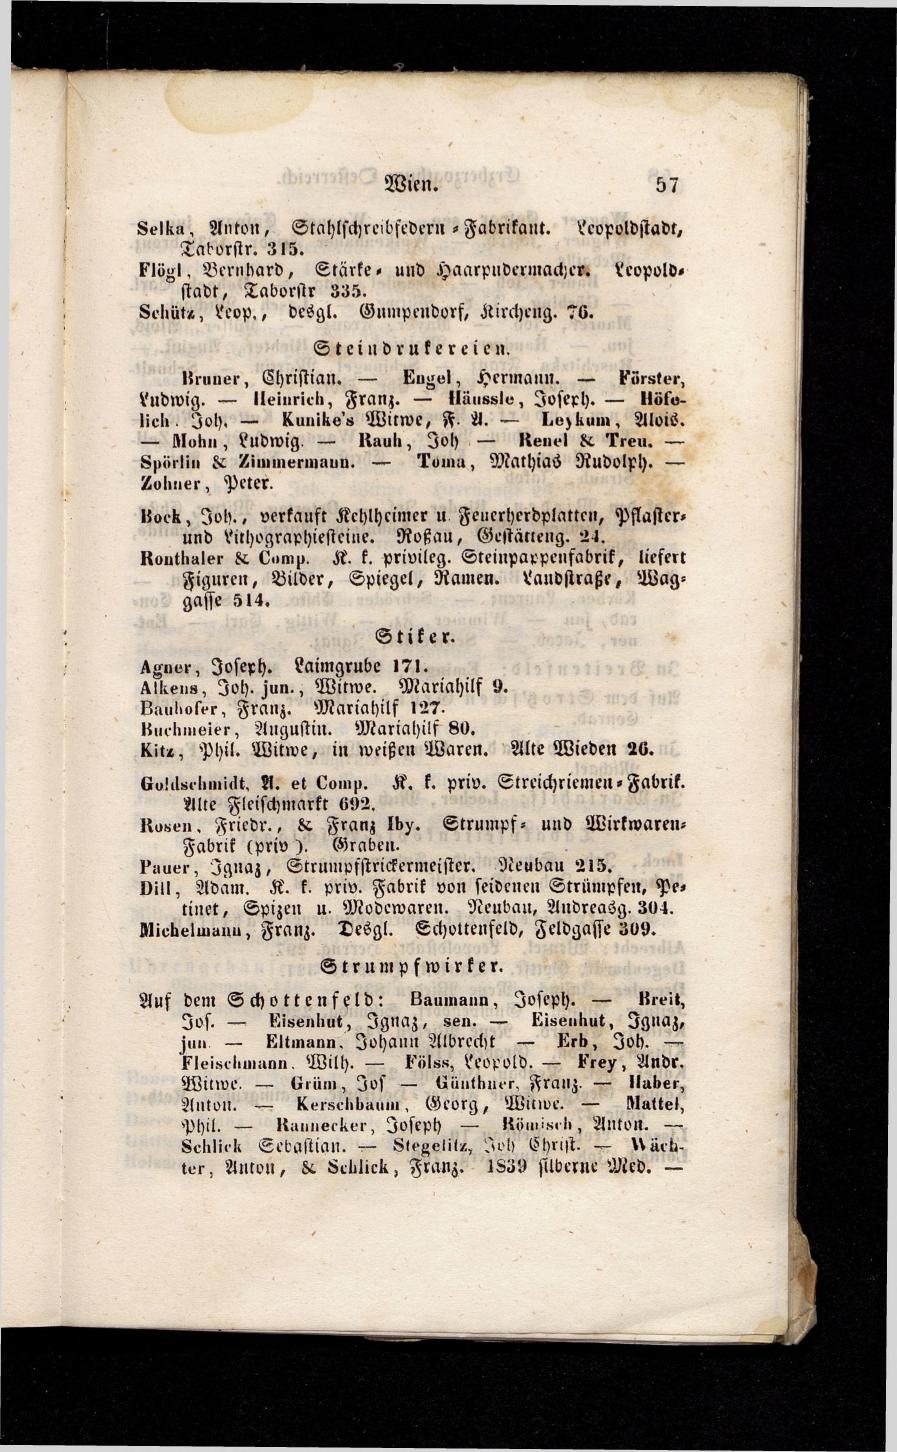 Grosses Adressbuch der Kaufleute. No. 13. Oesterreich ober u. unter der Enns 1844 - Seite 61